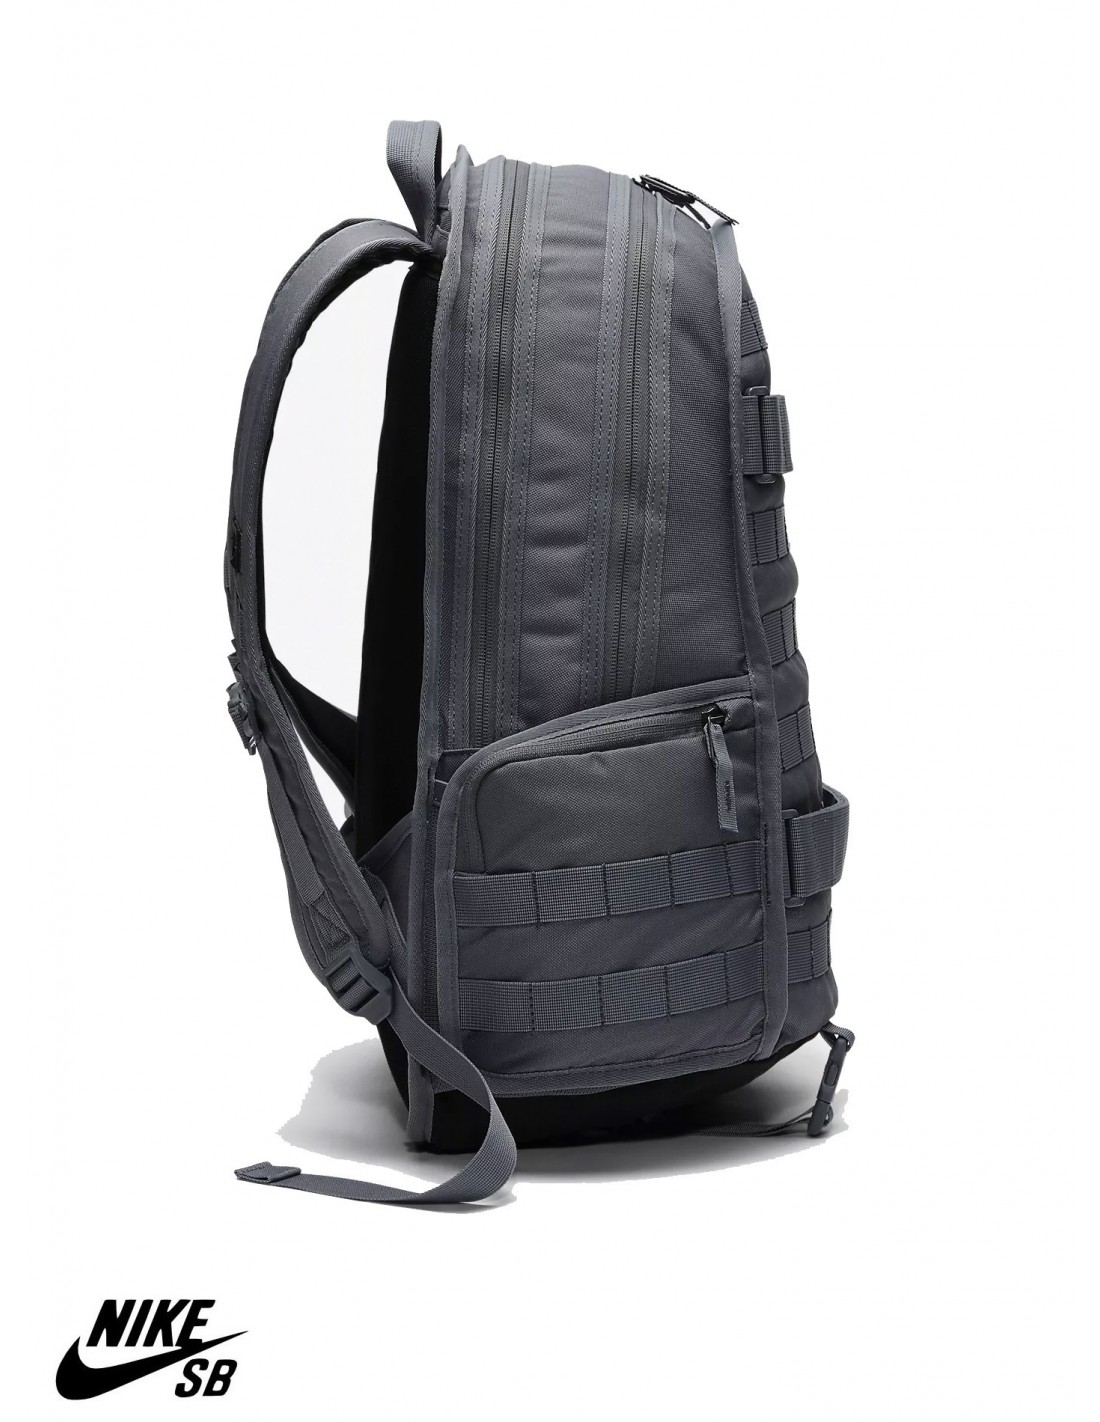 nike sb rpm backpack grey